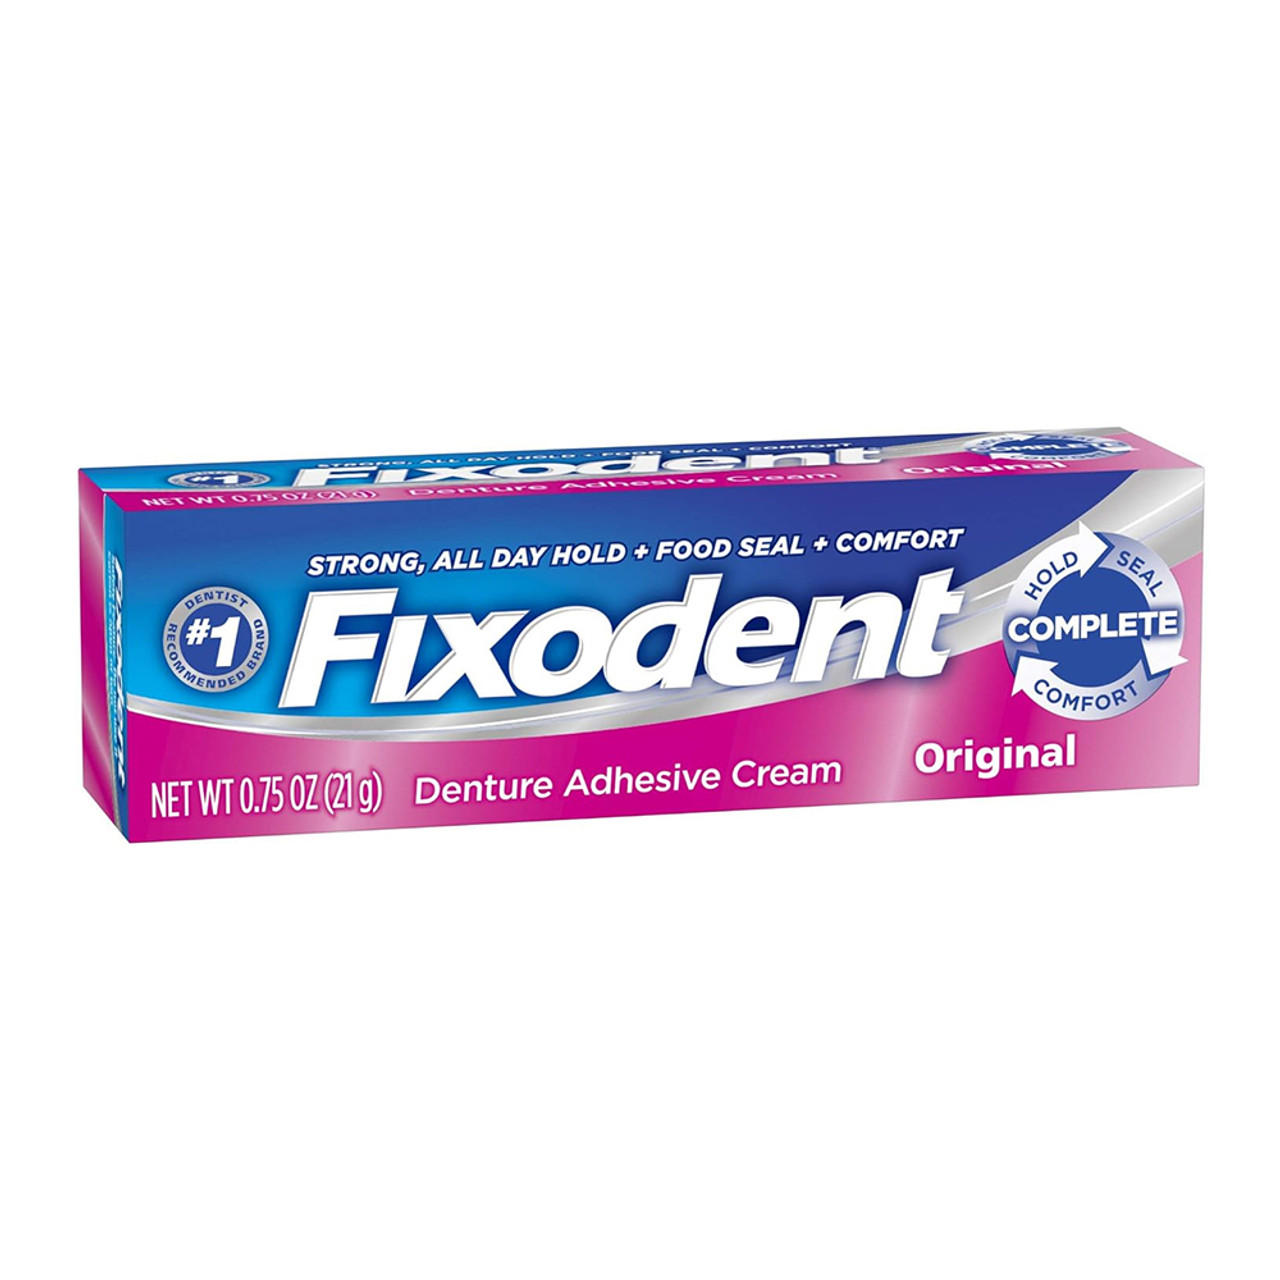 Fixodent Denture Adhesive Cream, Original 2.4 Oz